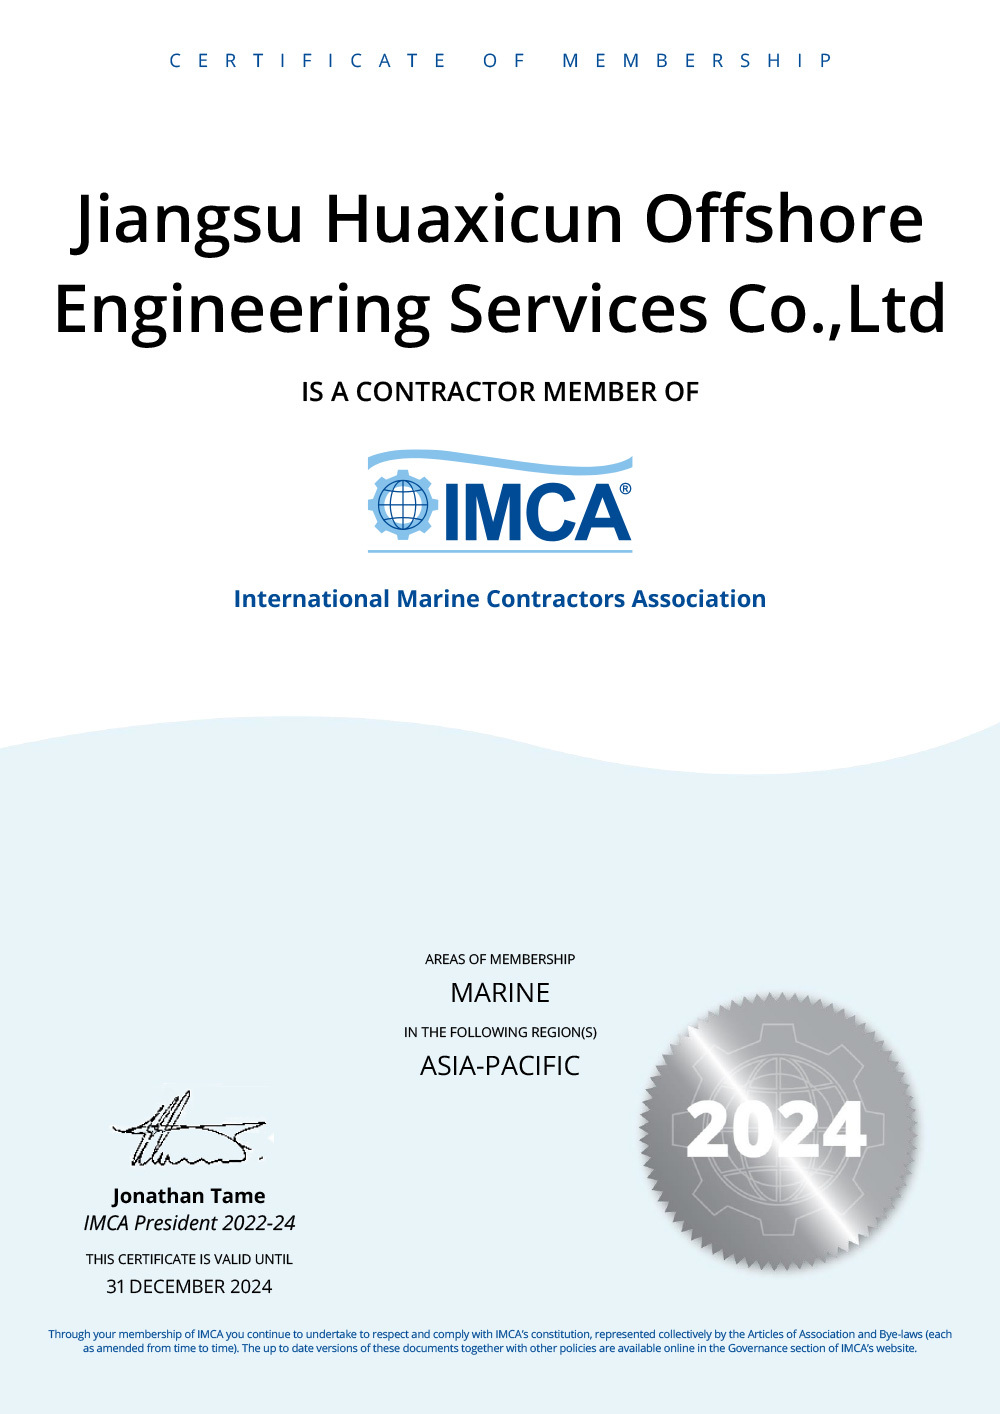 IMCA certificate